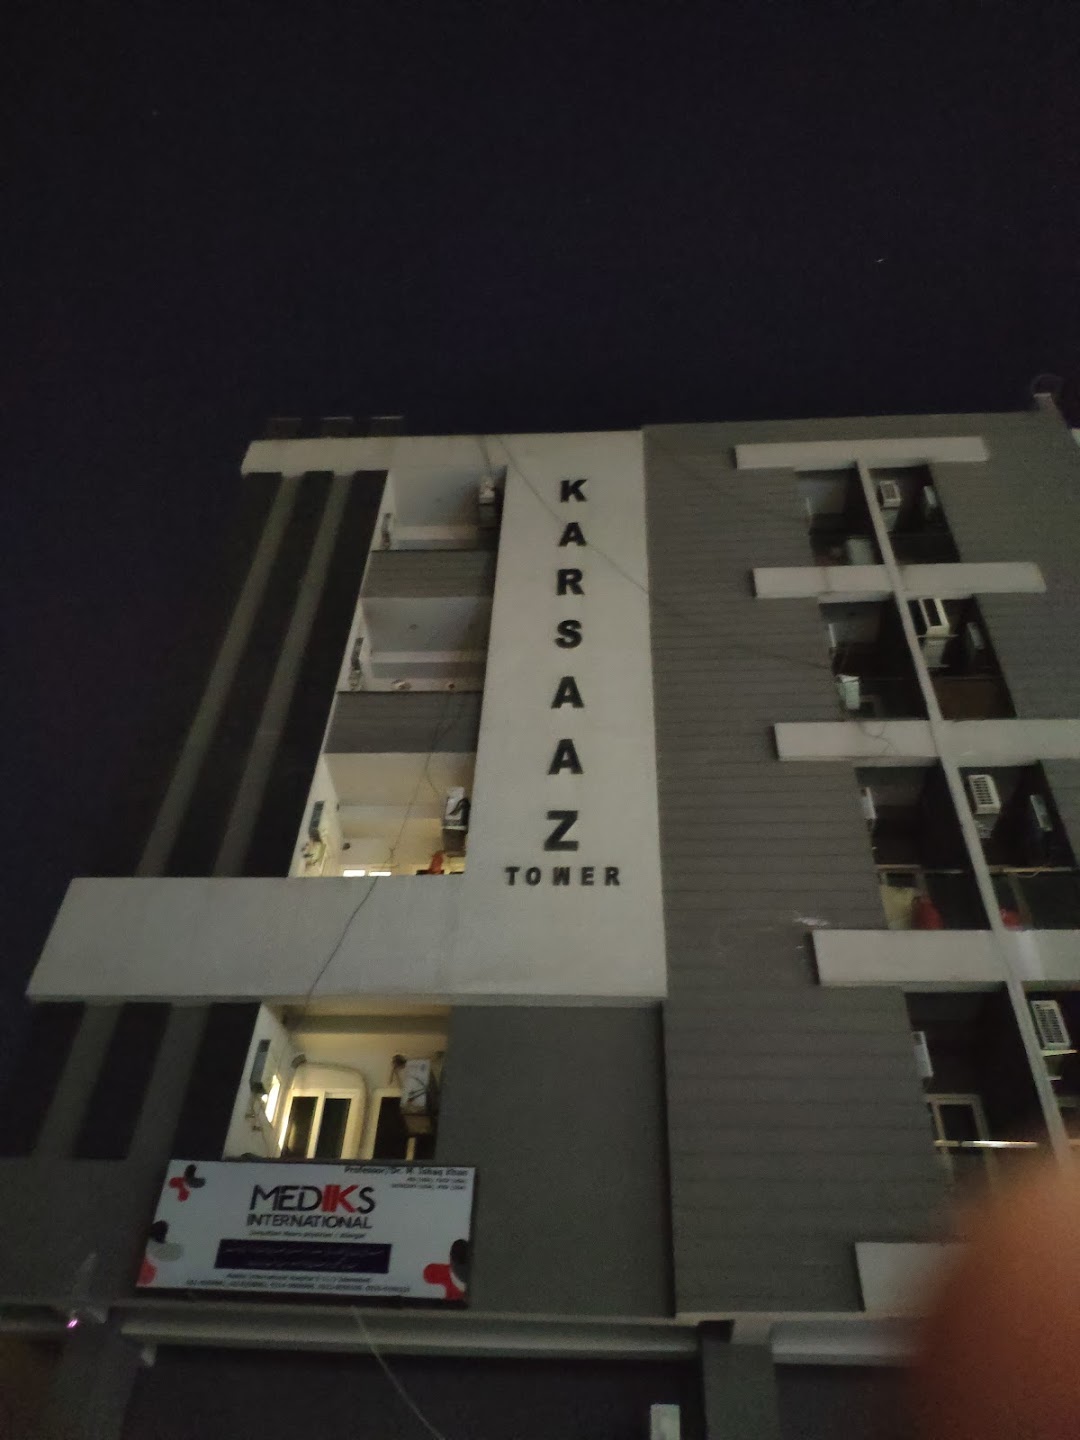 Karsaaz Apartments